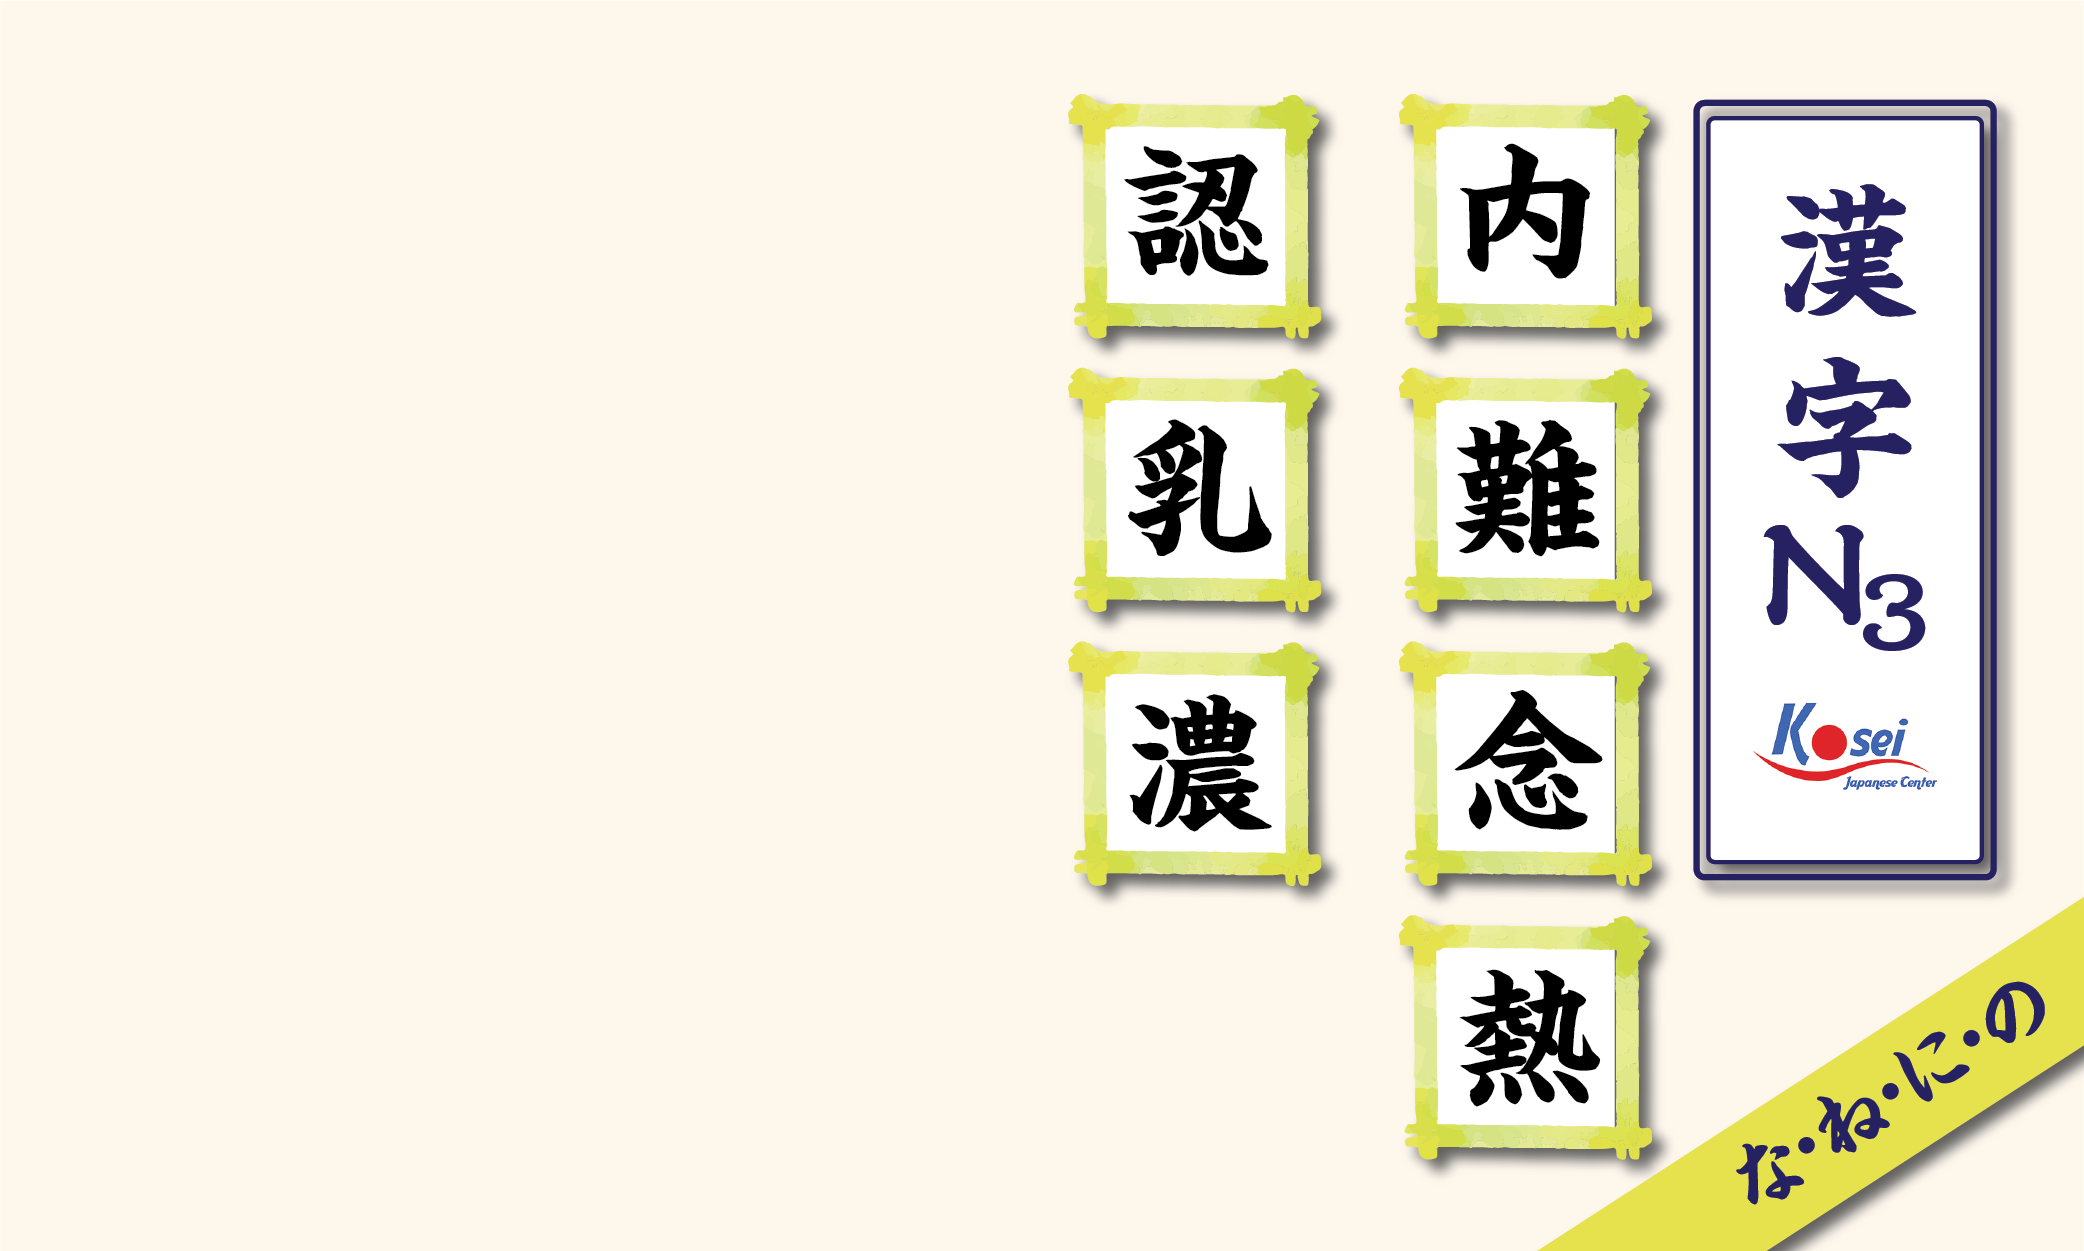 Tổng hợp Kanji N3 theo âm on: hàng N